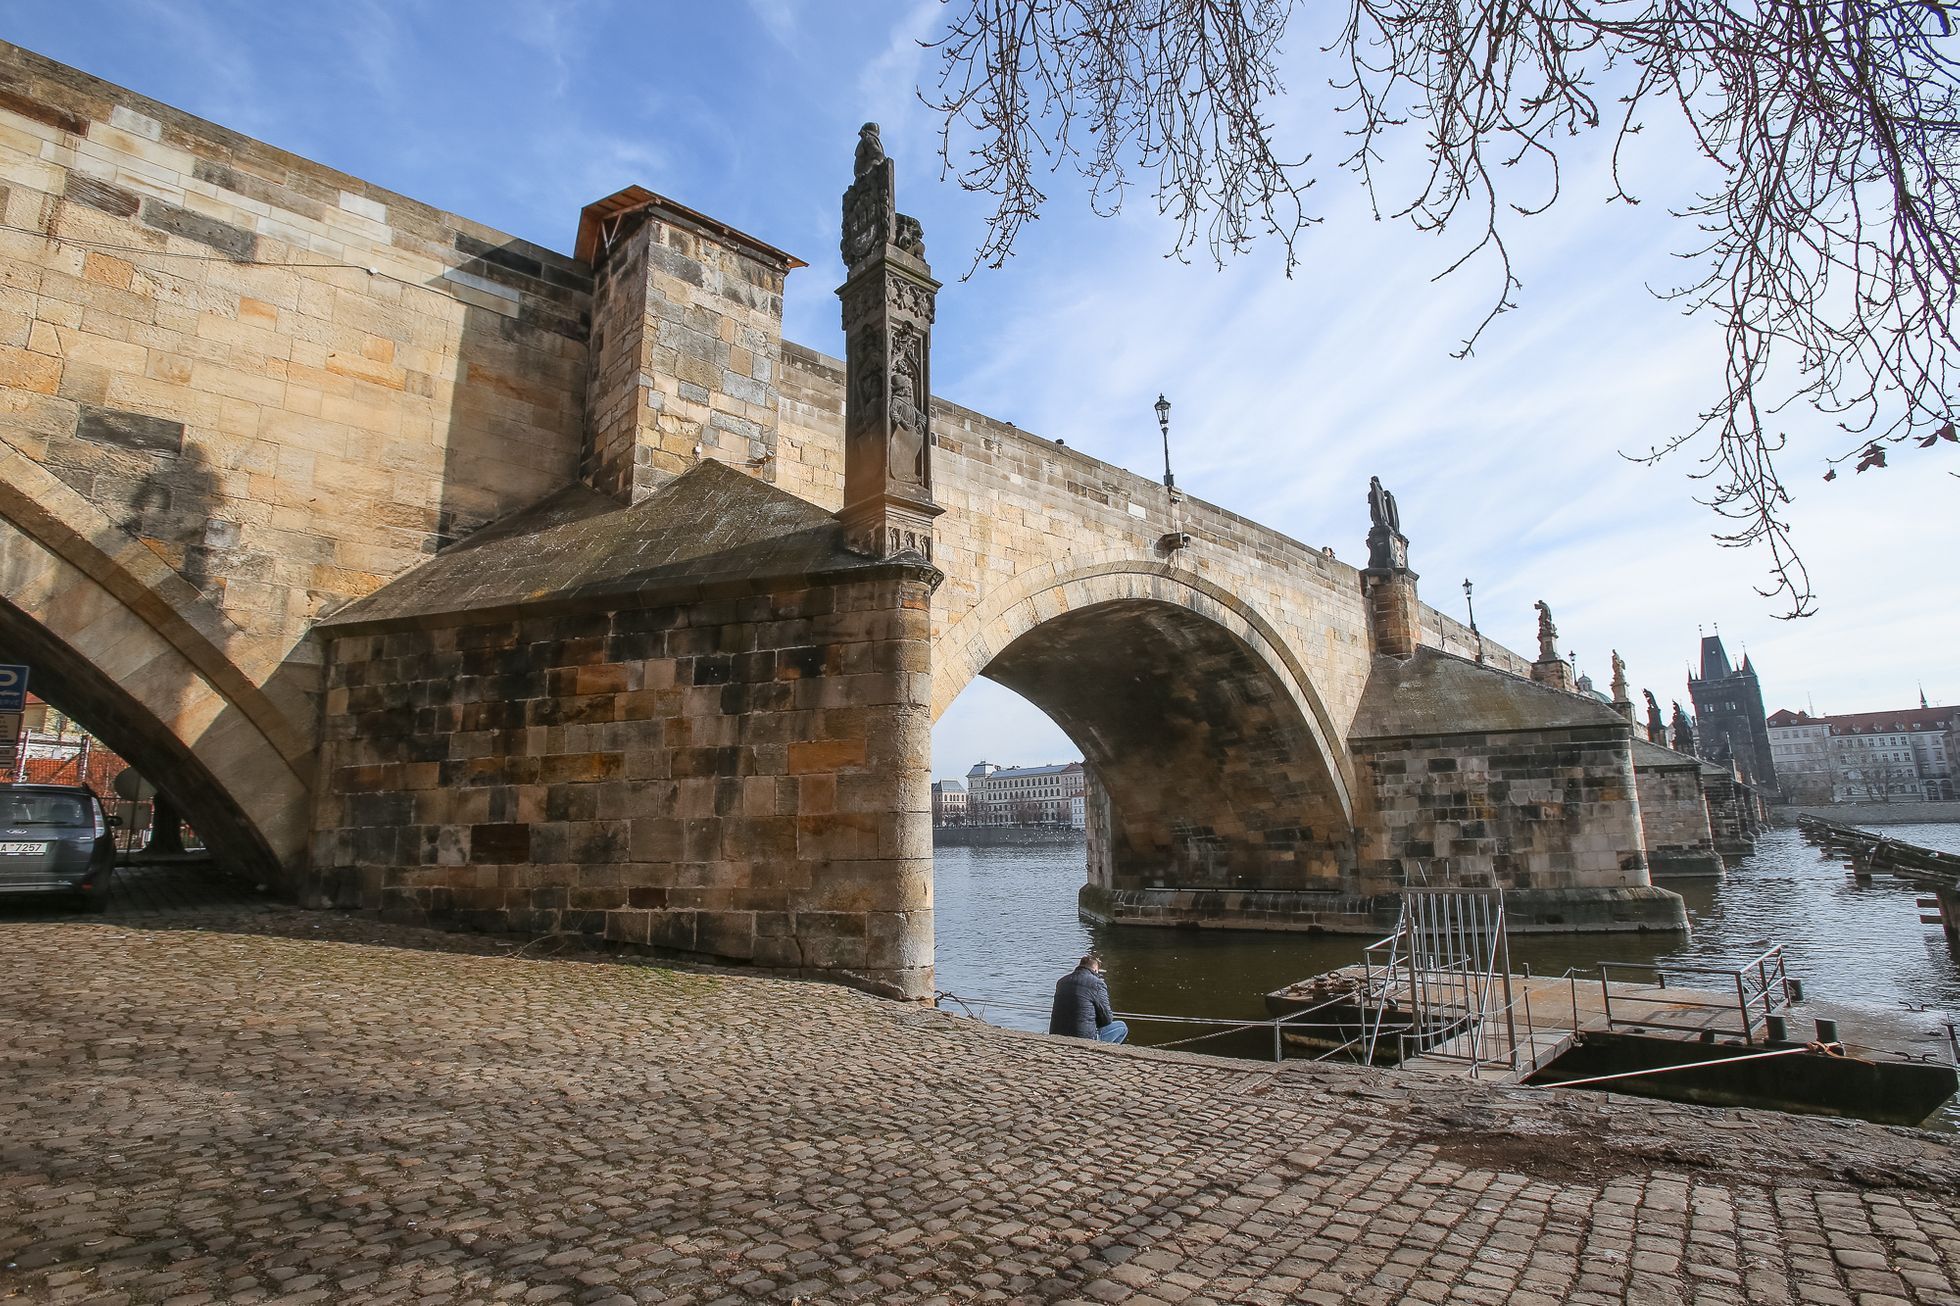 Velmi poškozené mosty v Praze podle TSK - Karlův most